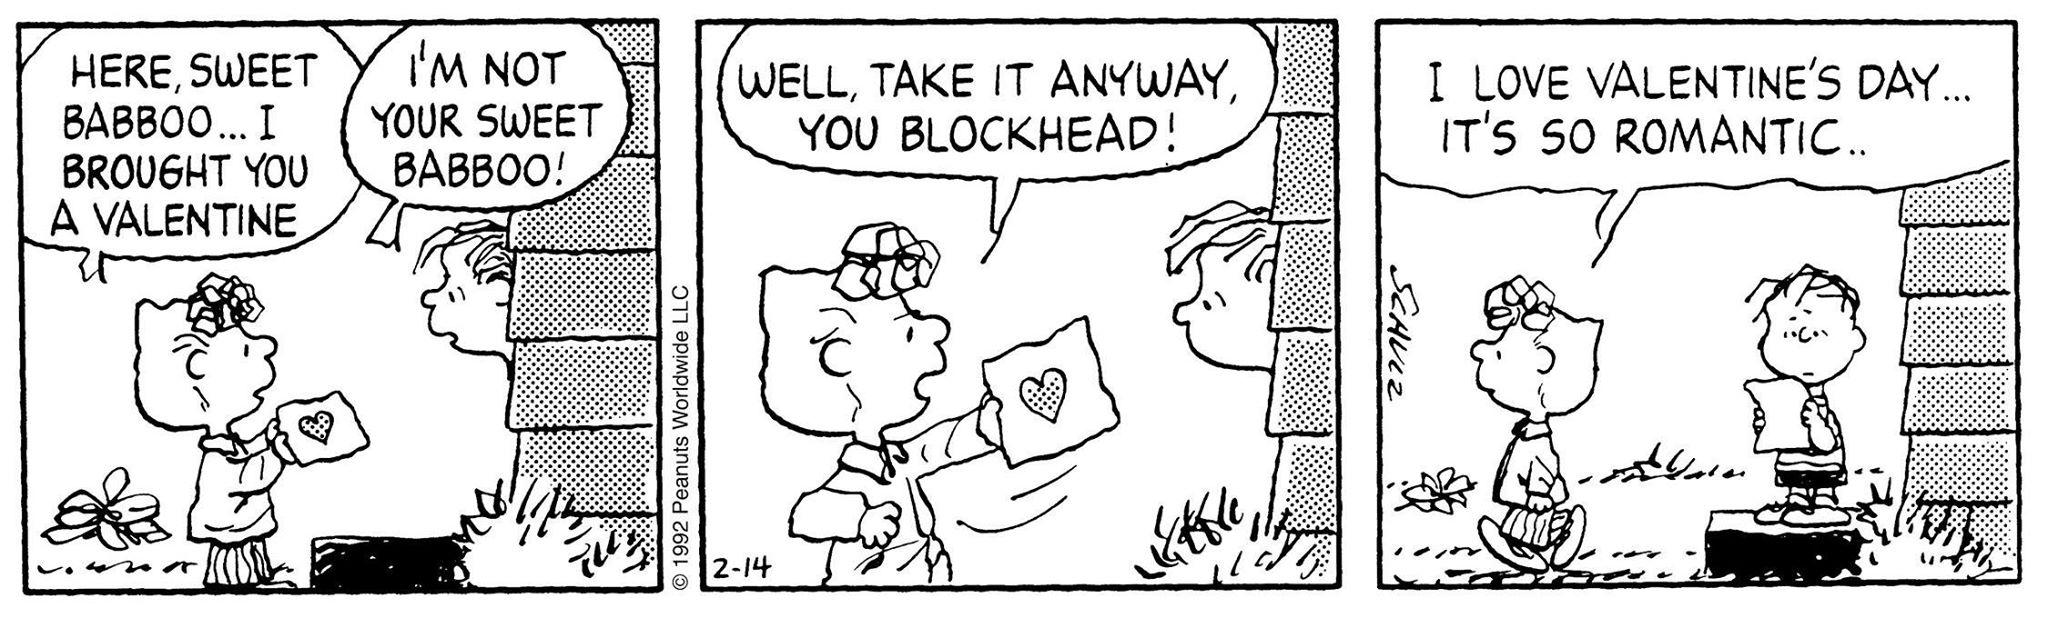 TTBBM My Valentine, Charlie Brown #MondayMemories